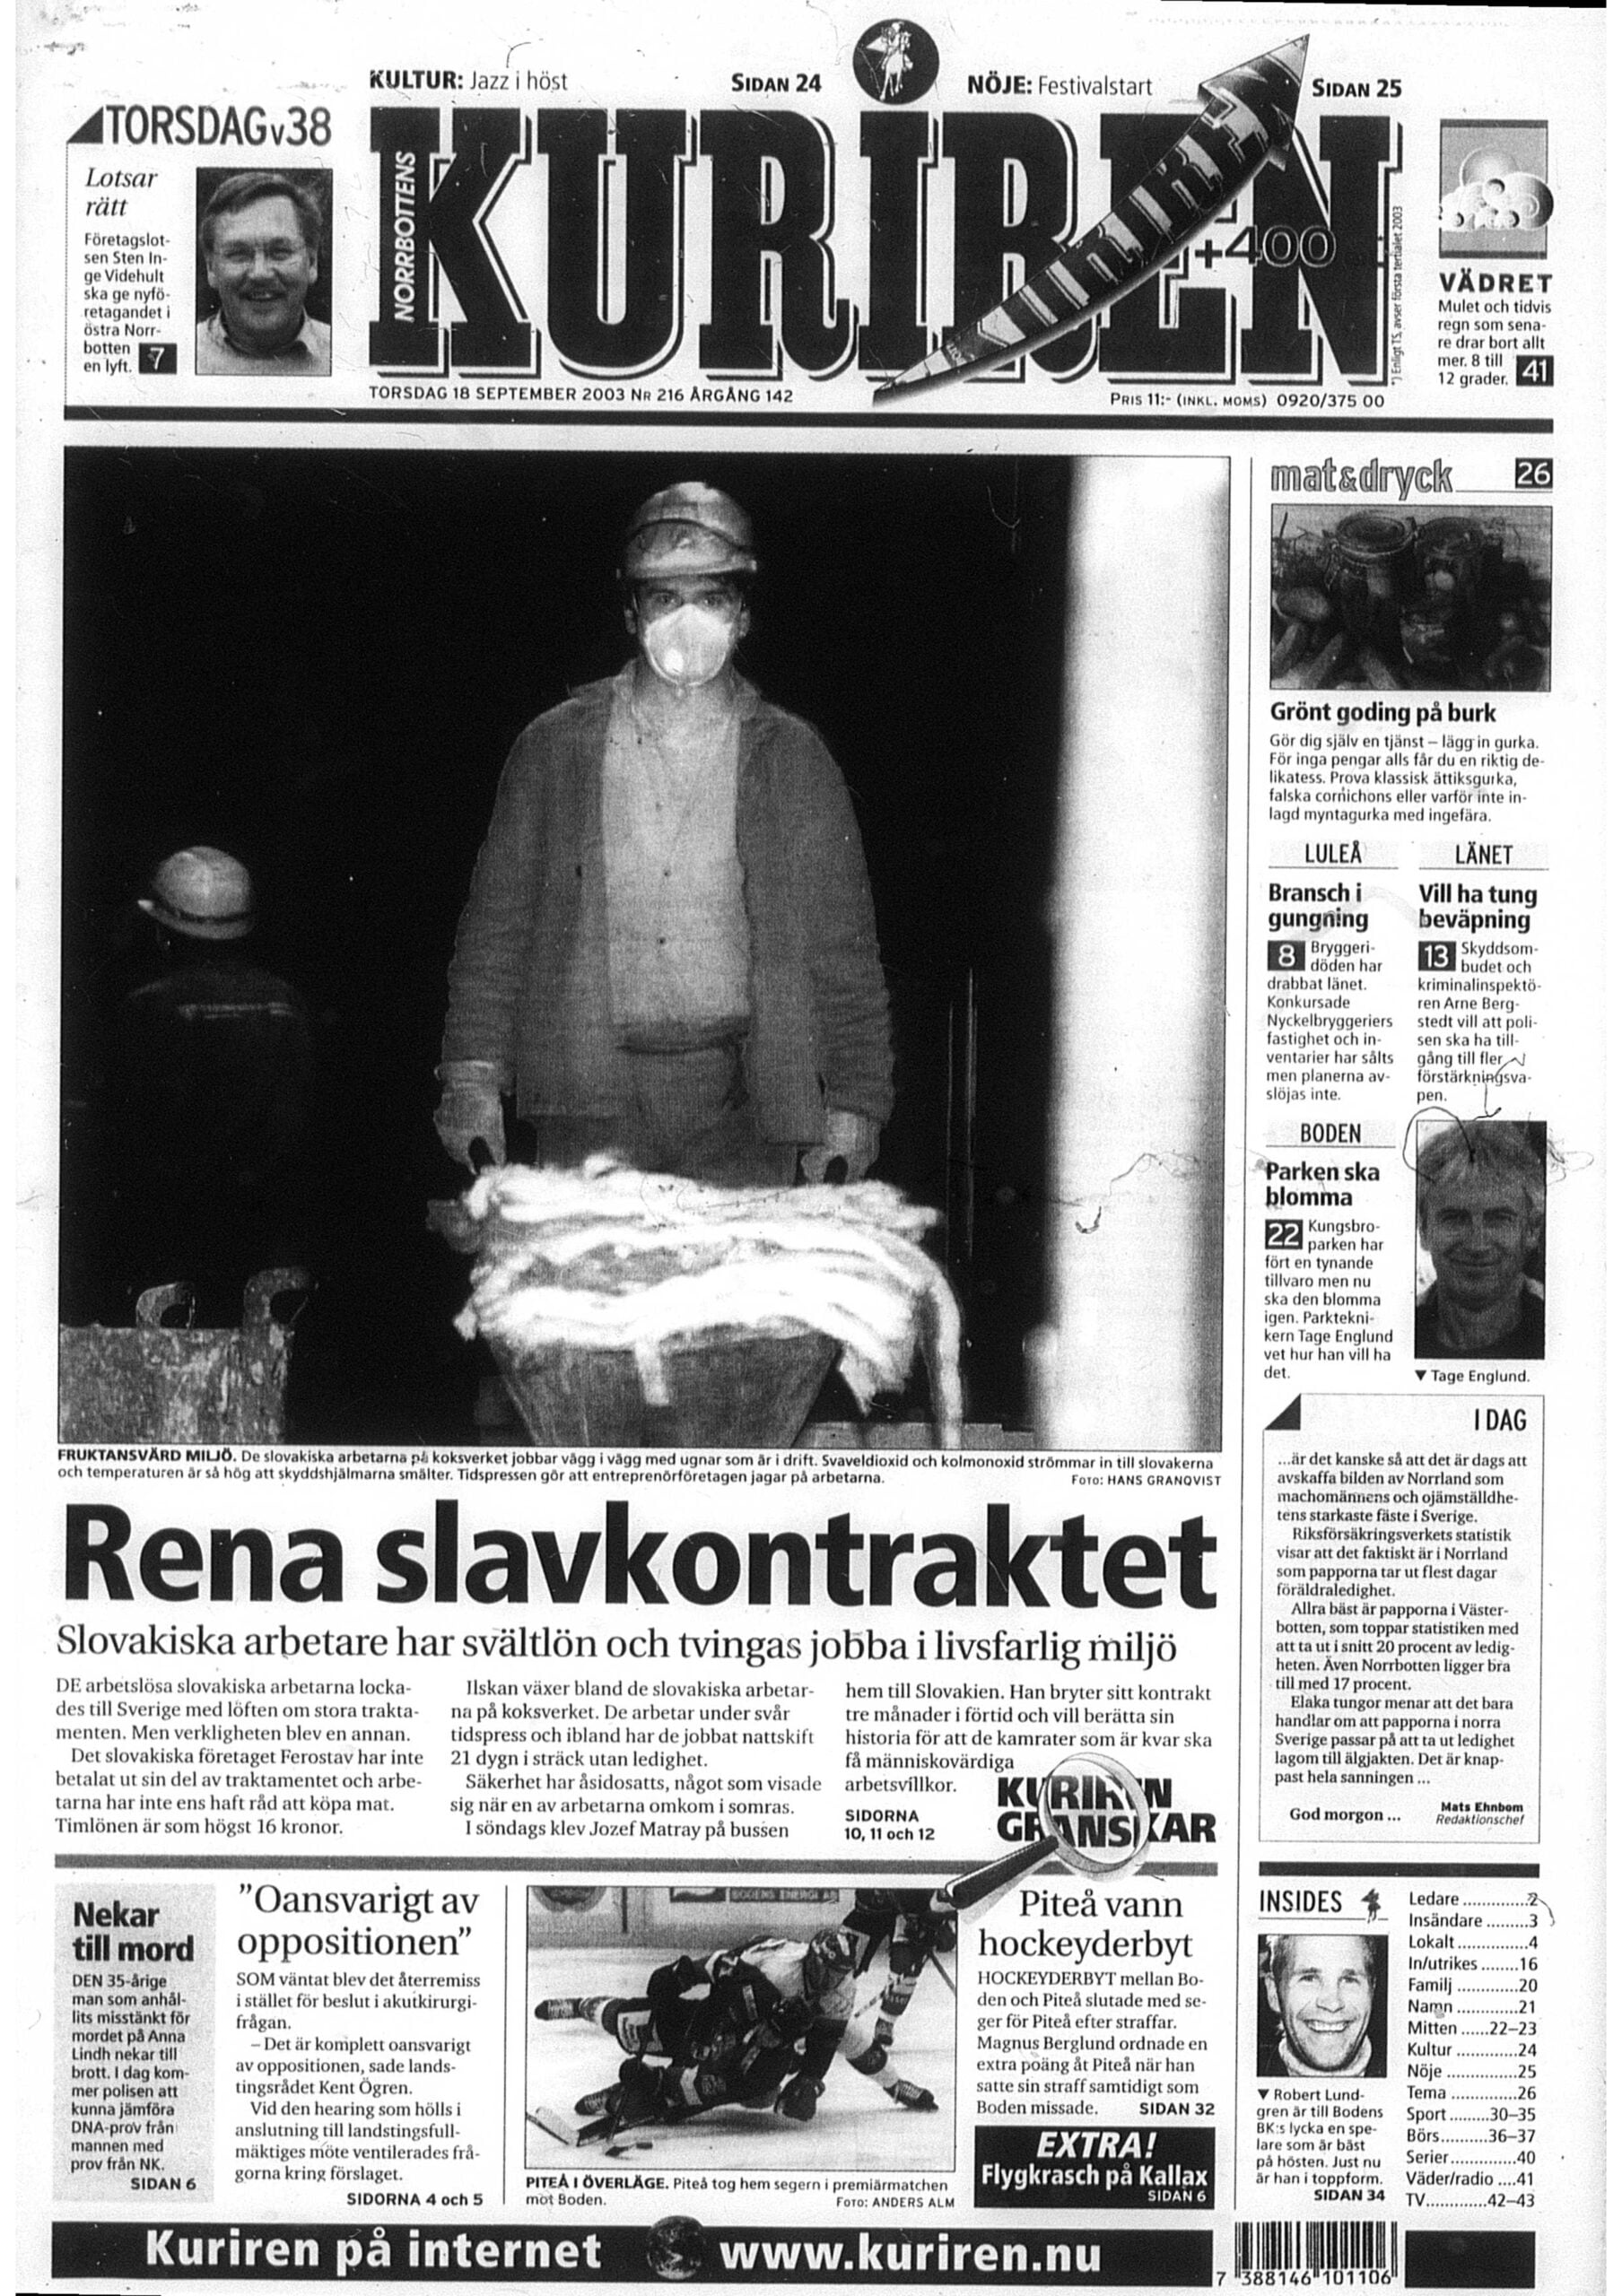 Norrbottens-Kuriren: Rena slavkontraktet